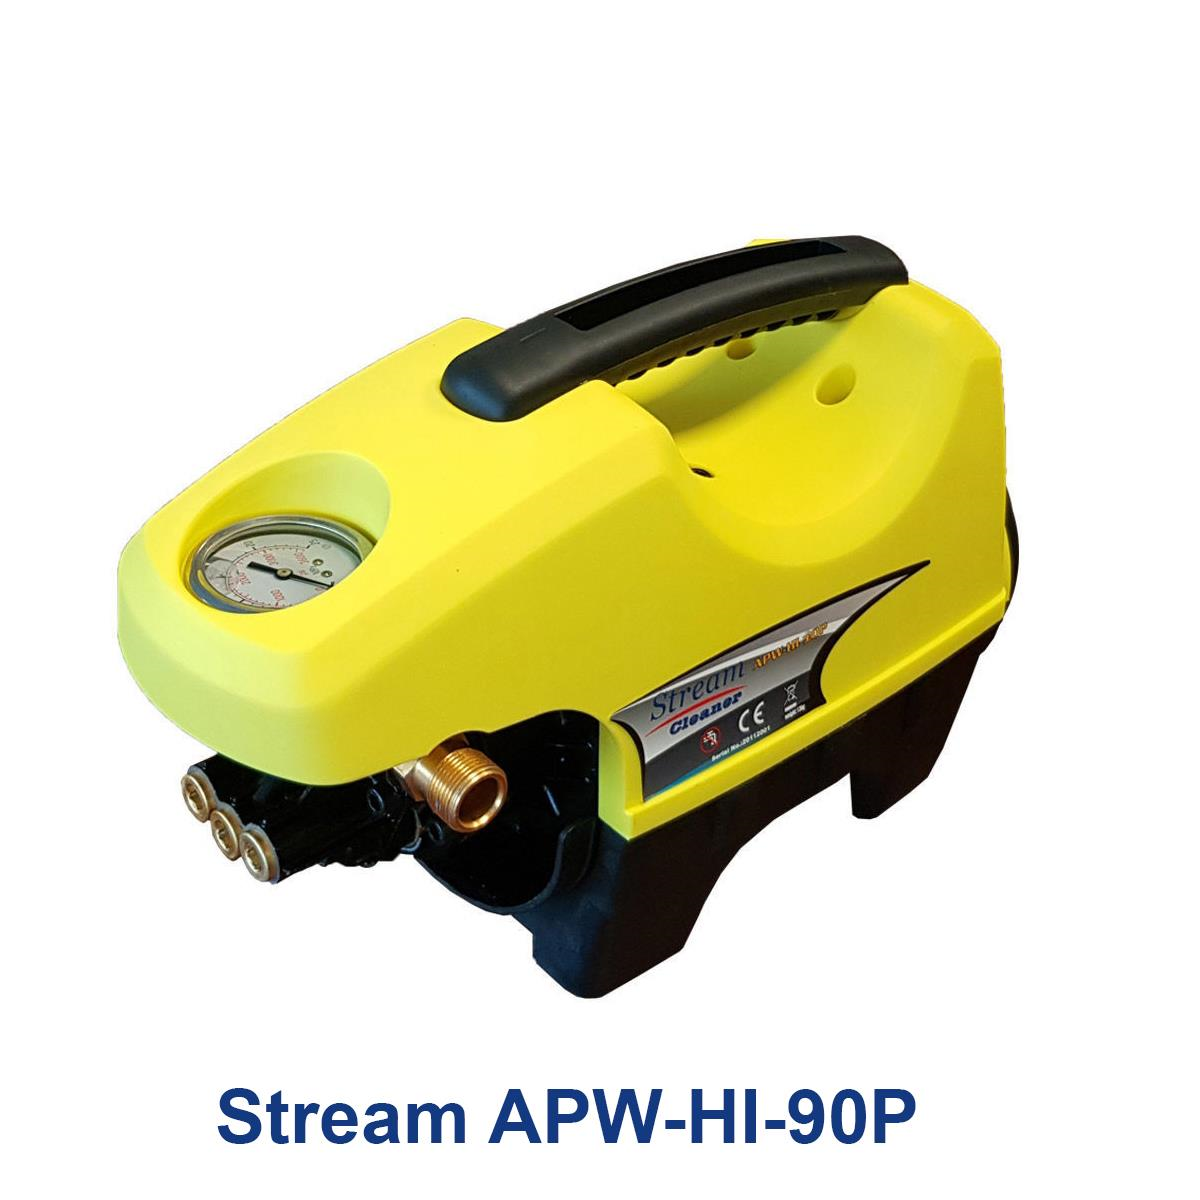 Stream-APW-HI-90P